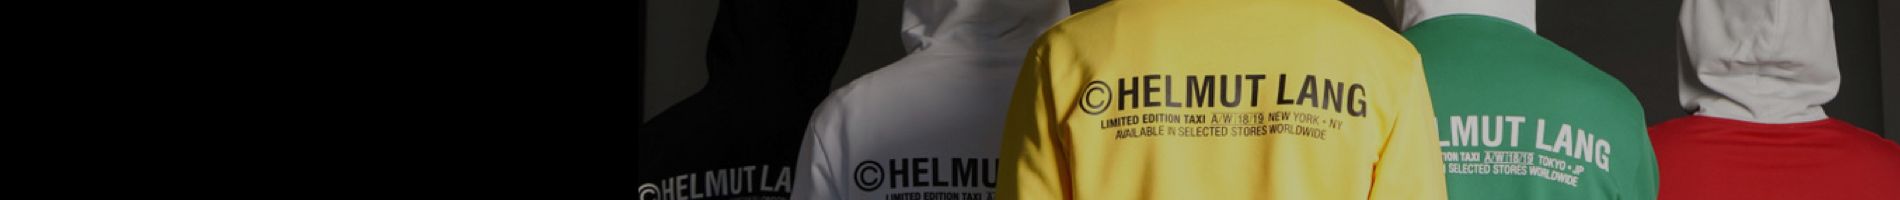 Helmut Lang Men's Belts Banner